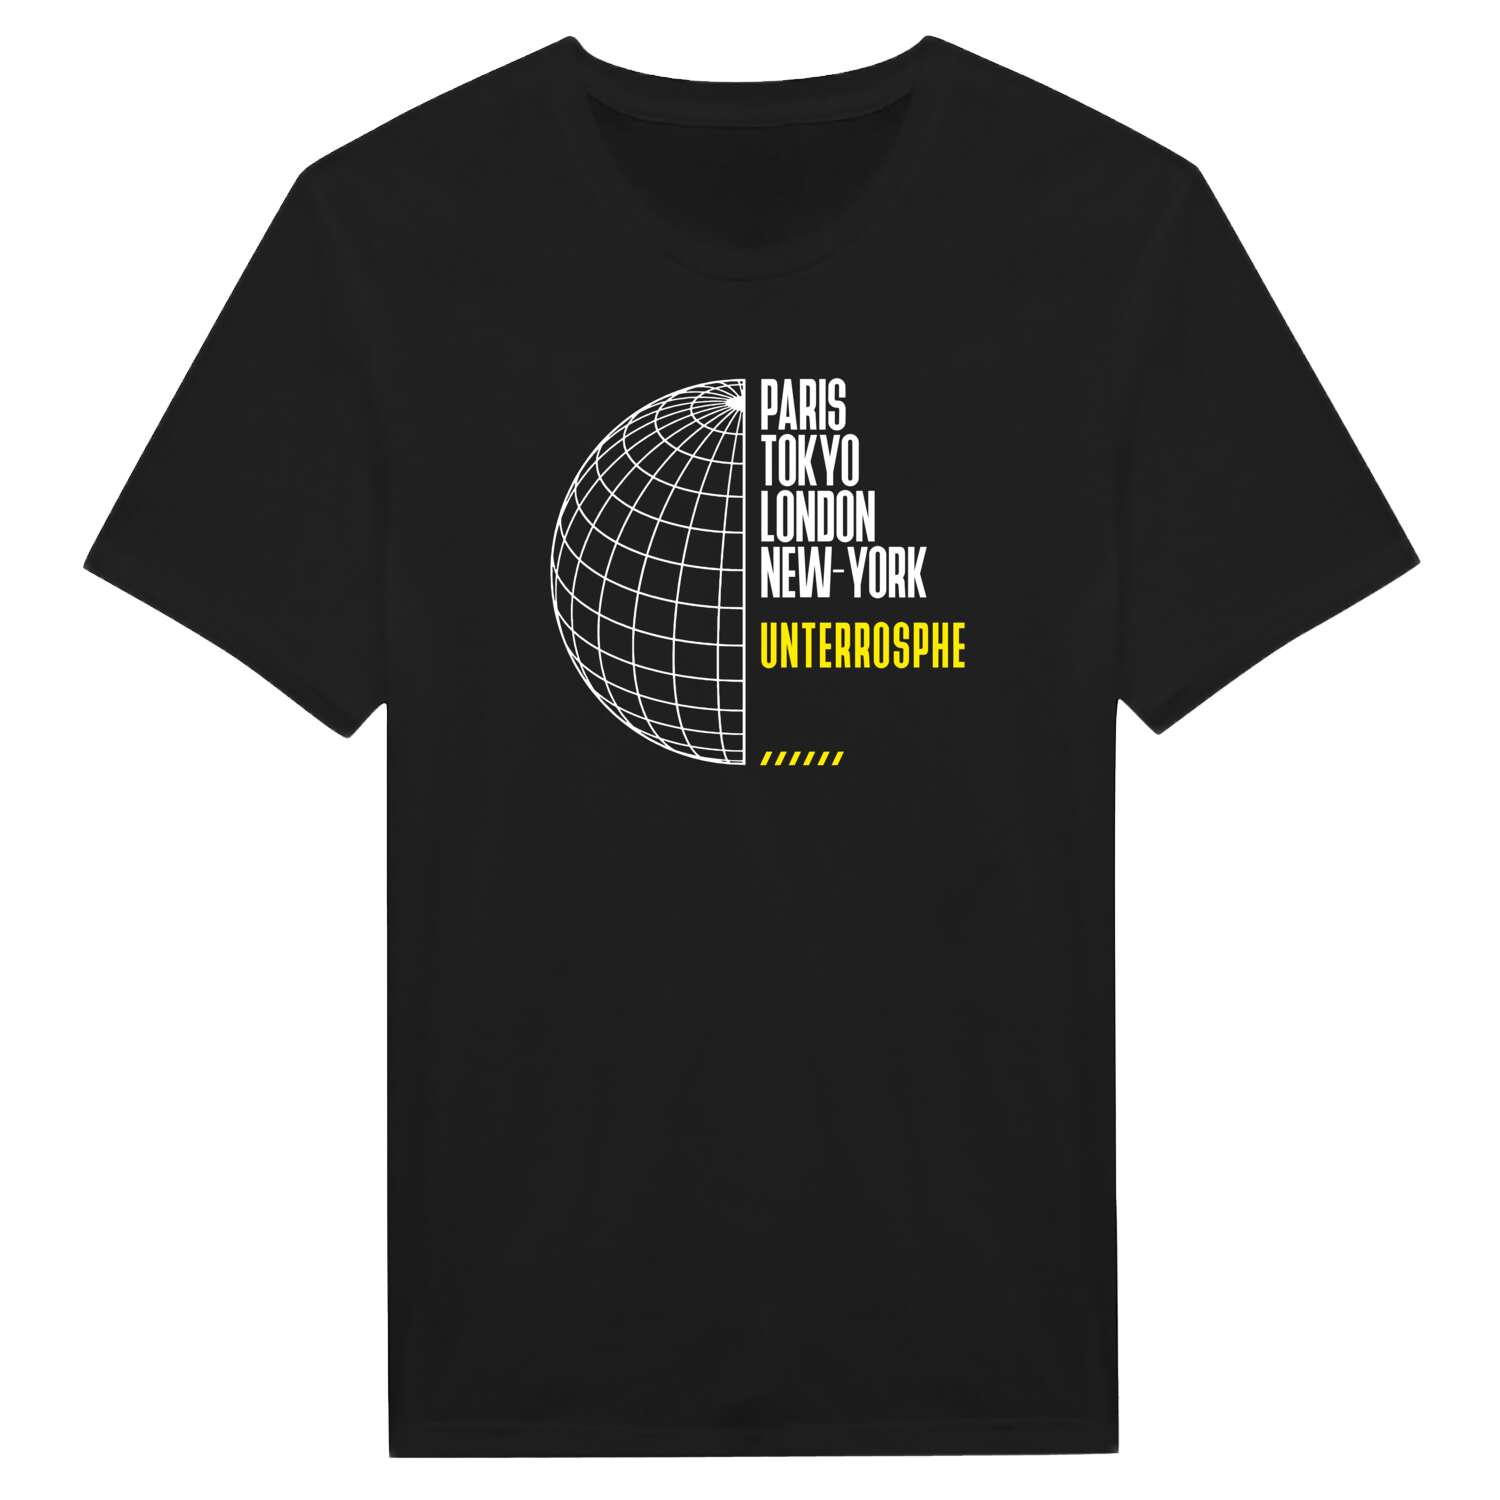 Unterrosphe T-Shirt »Paris Tokyo London«